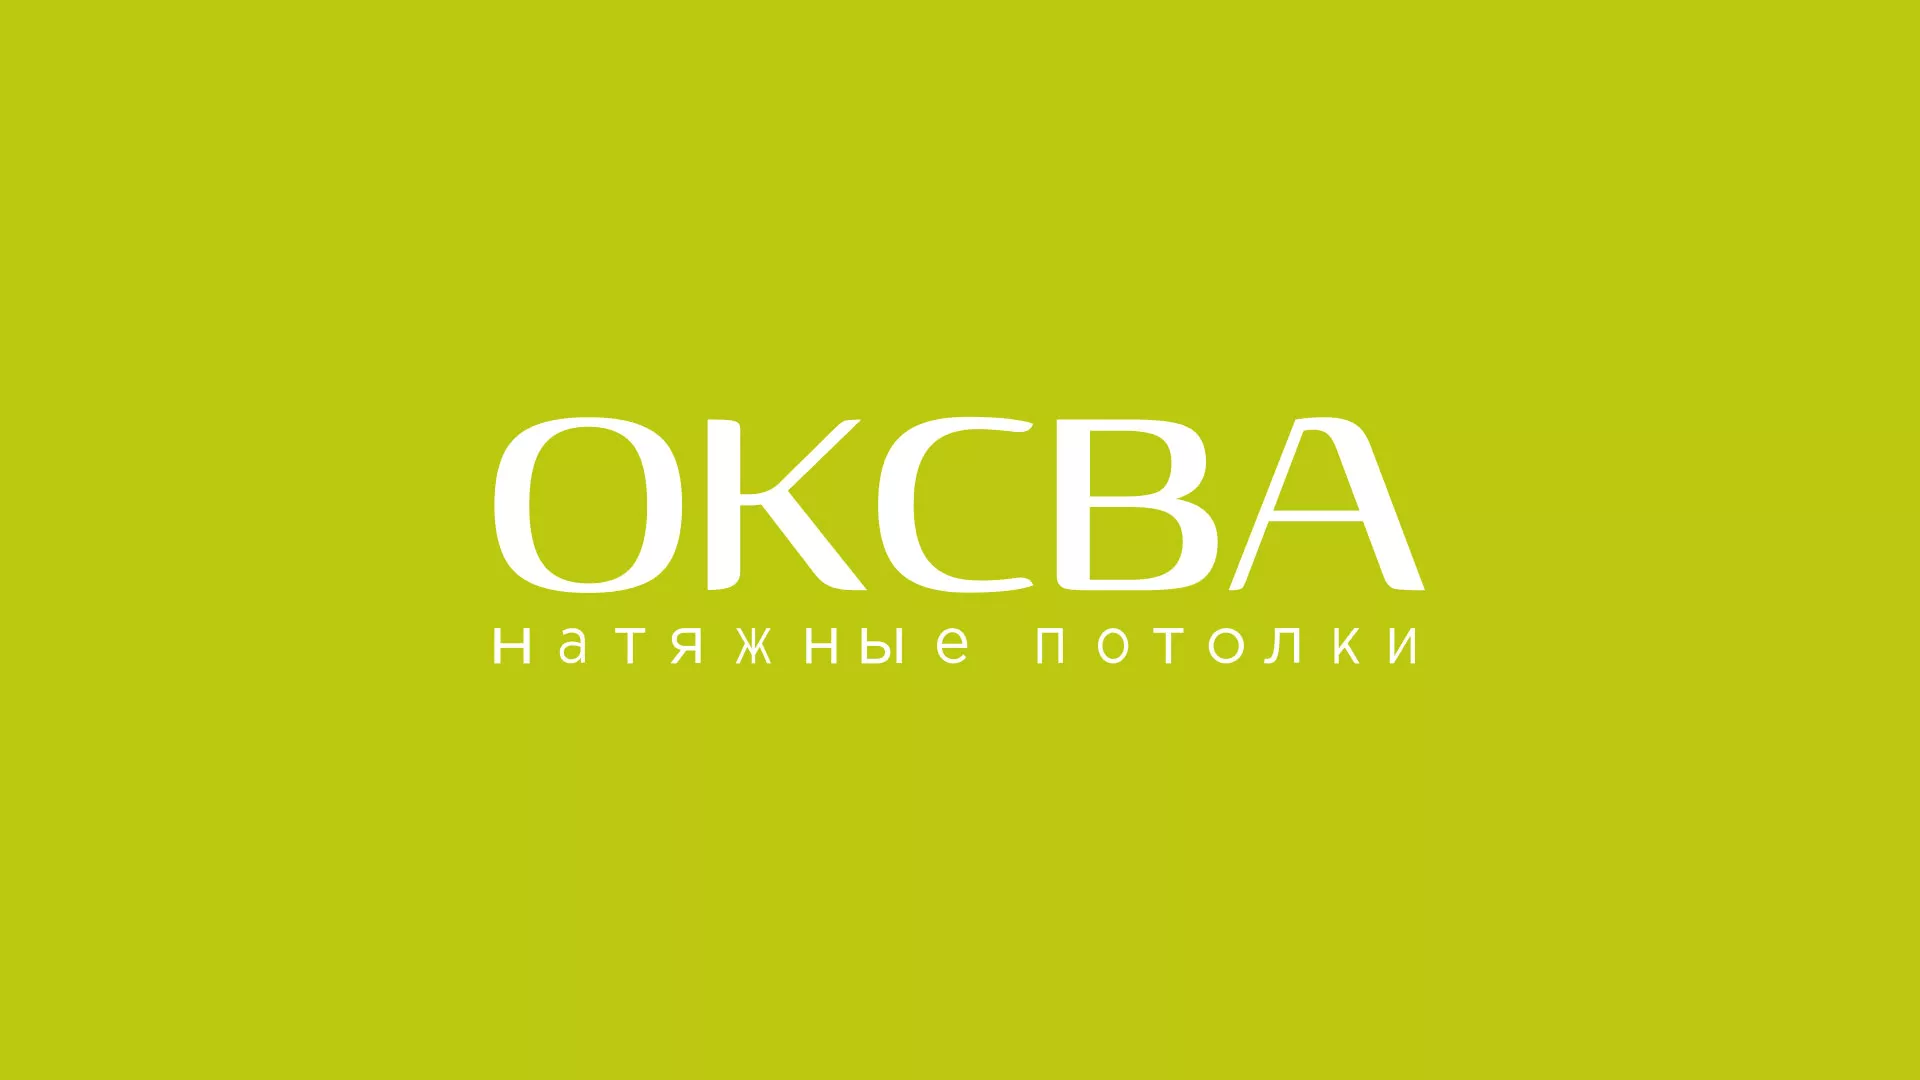 Создание сайта по продаже натяжных потолков для компании «ОКСВА» в Бабаево